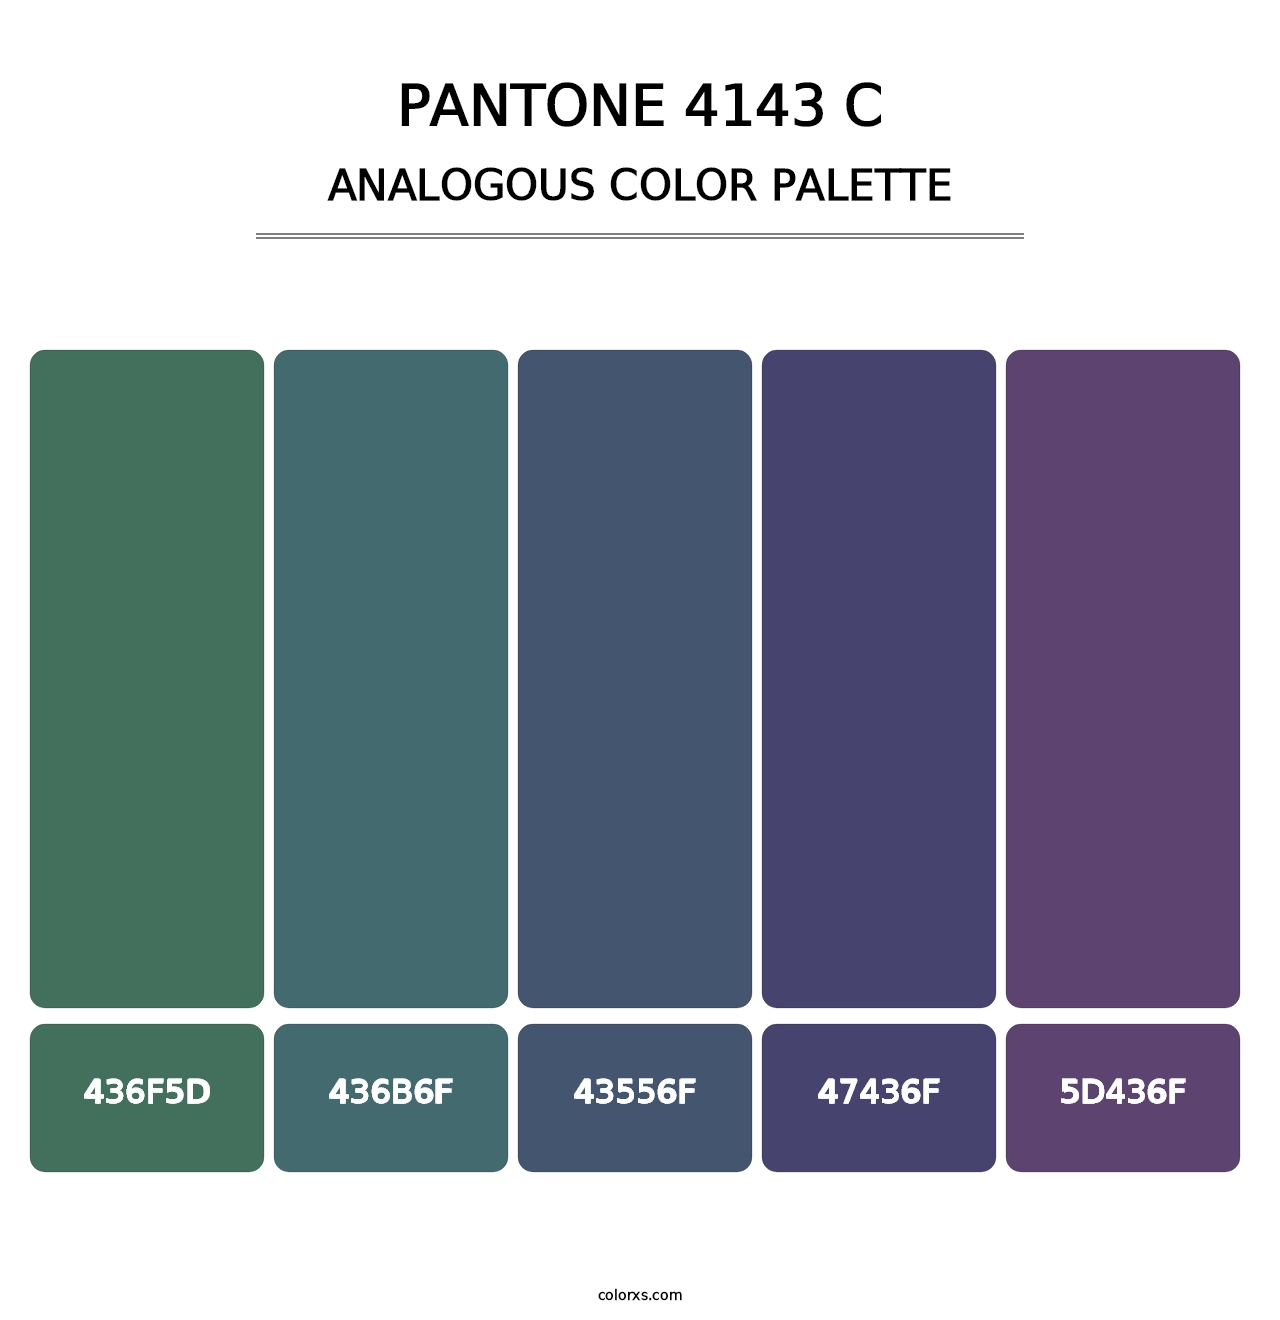 PANTONE 4143 C - Analogous Color Palette